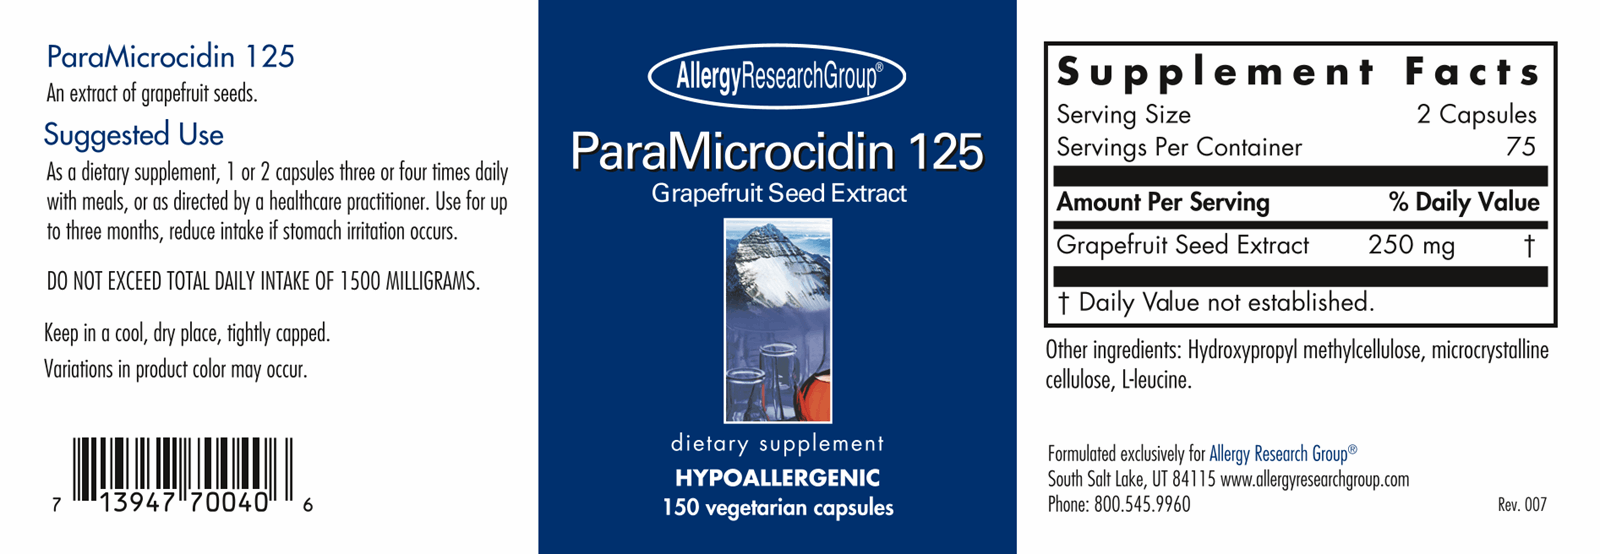 ParaMicrocidin 125 mg